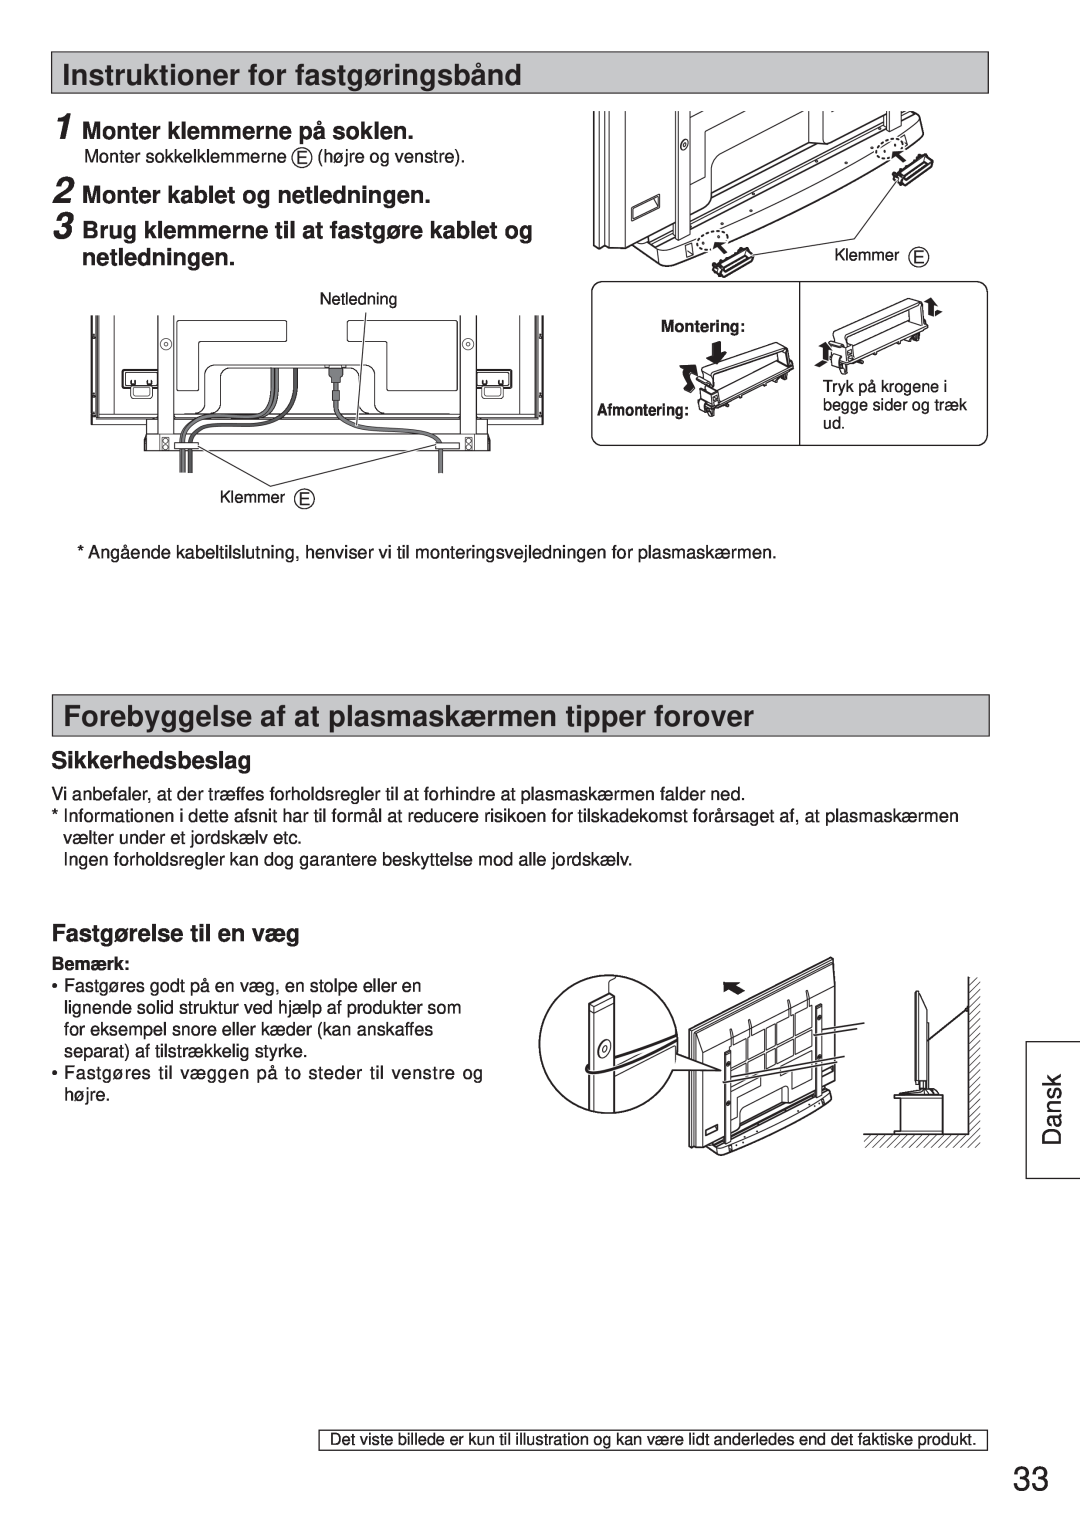 Panasonic TY-ST65VX100 Instruktioner for fastgøringsbånd, Forebyggelse af at plasmaskærmen tipper forover, Dansk 